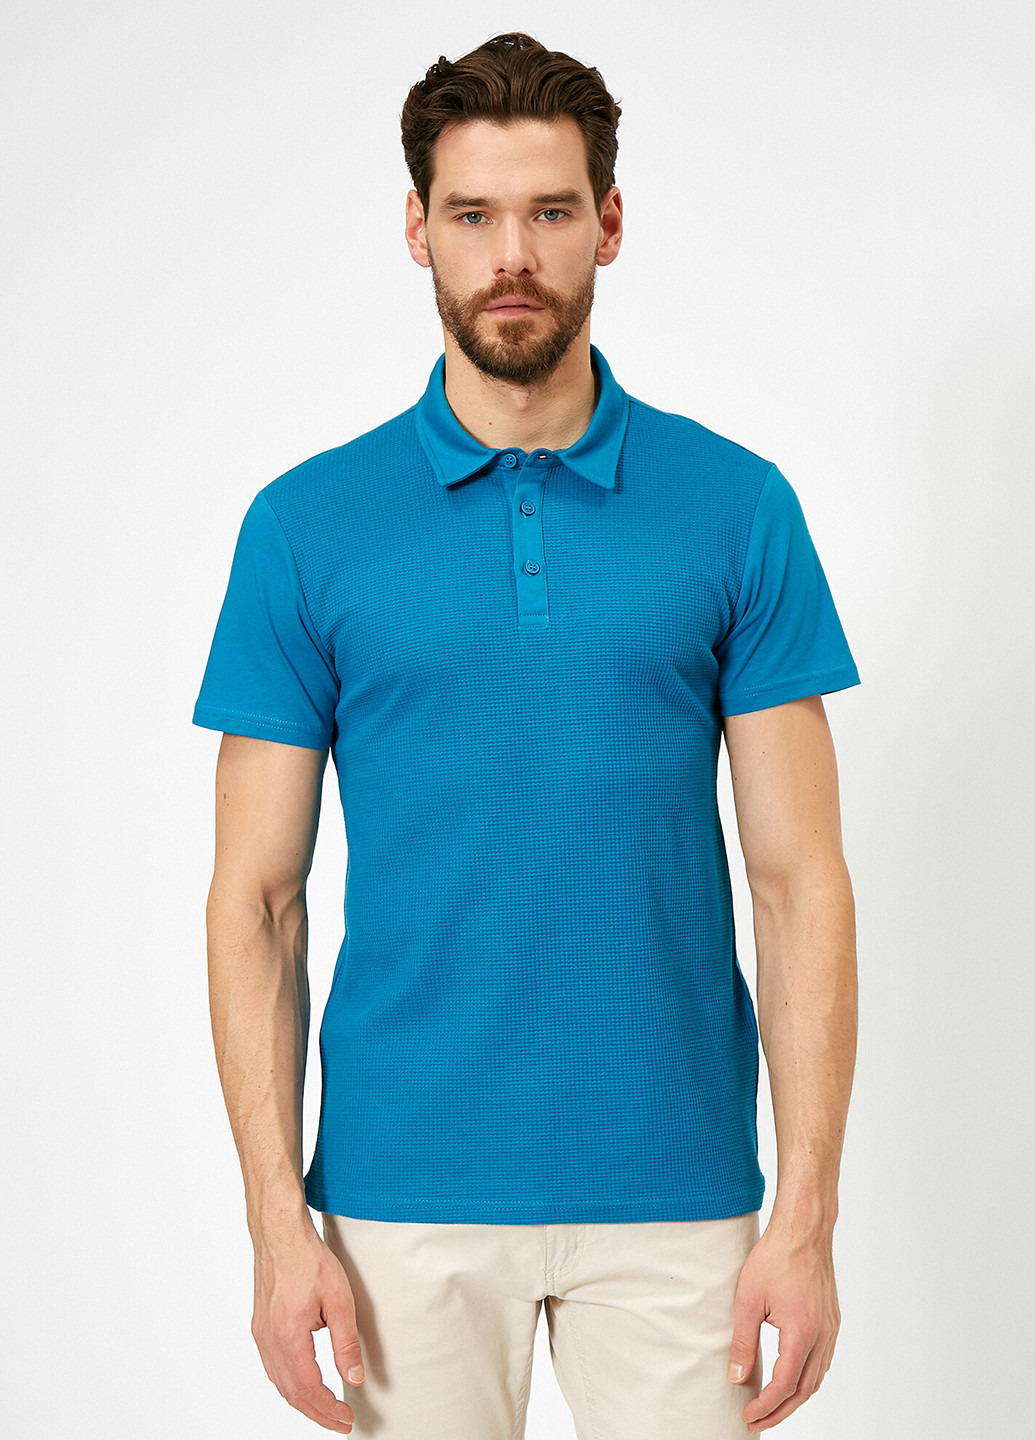 Синяя футболка-поло для мужчин KOTON однотонная